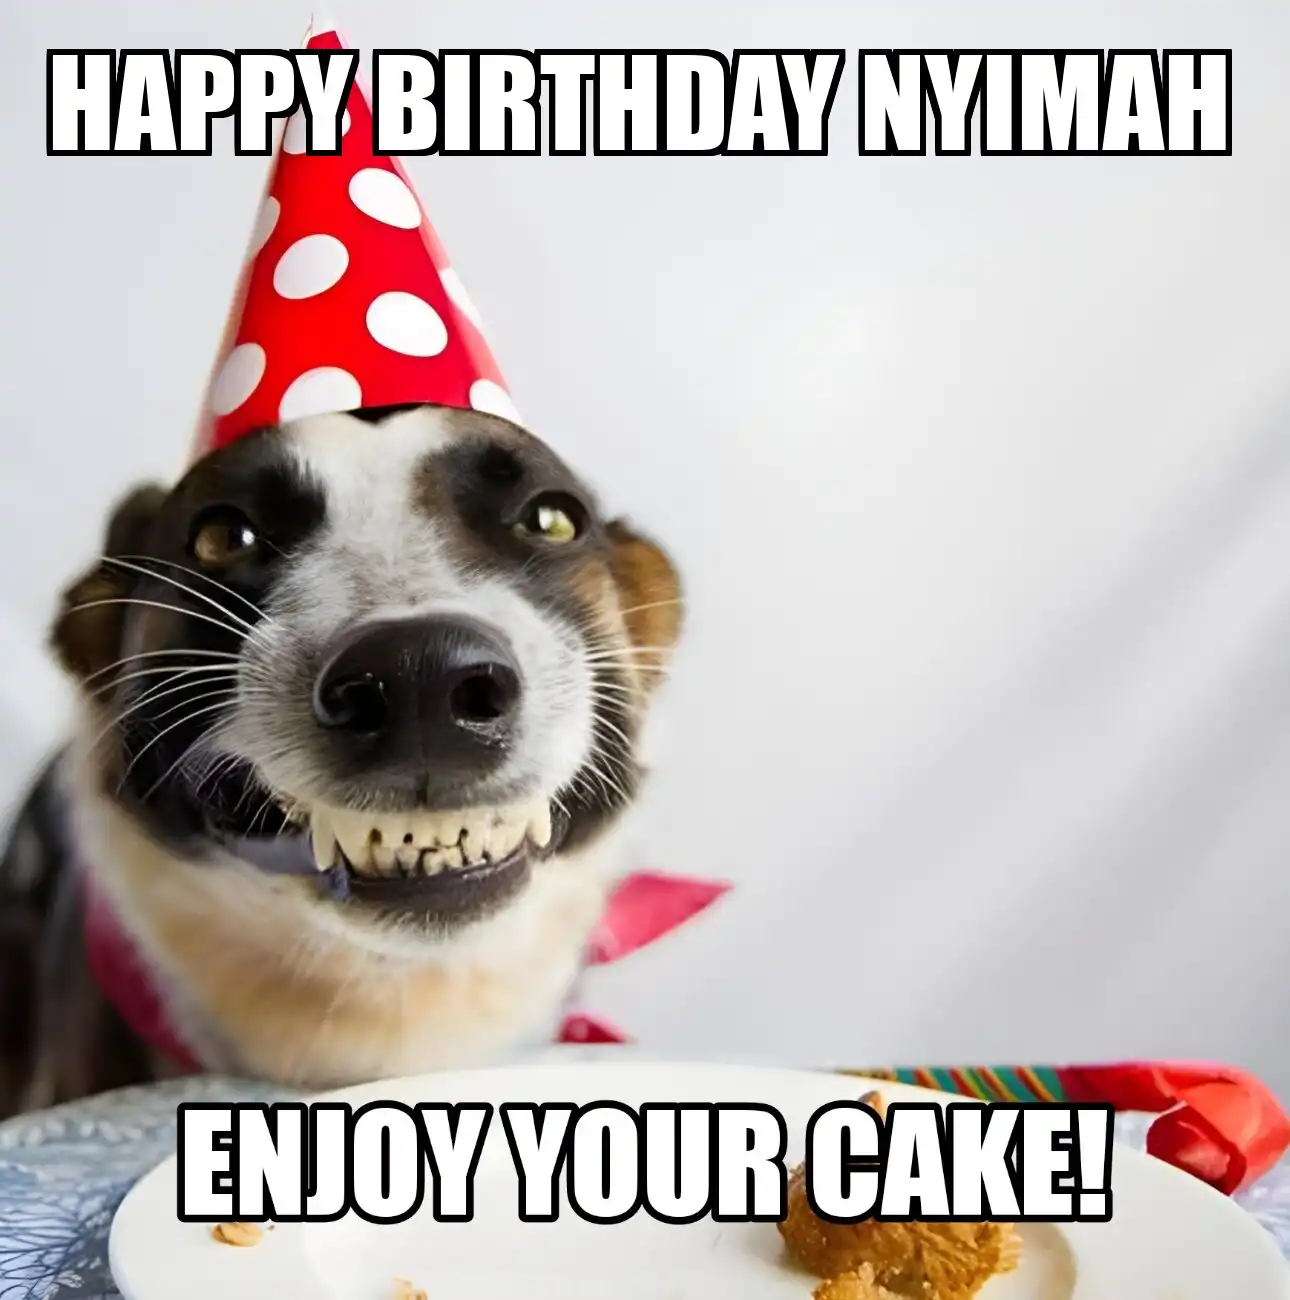 Happy Birthday Nyimah Enjoy Your Cake Dog Meme